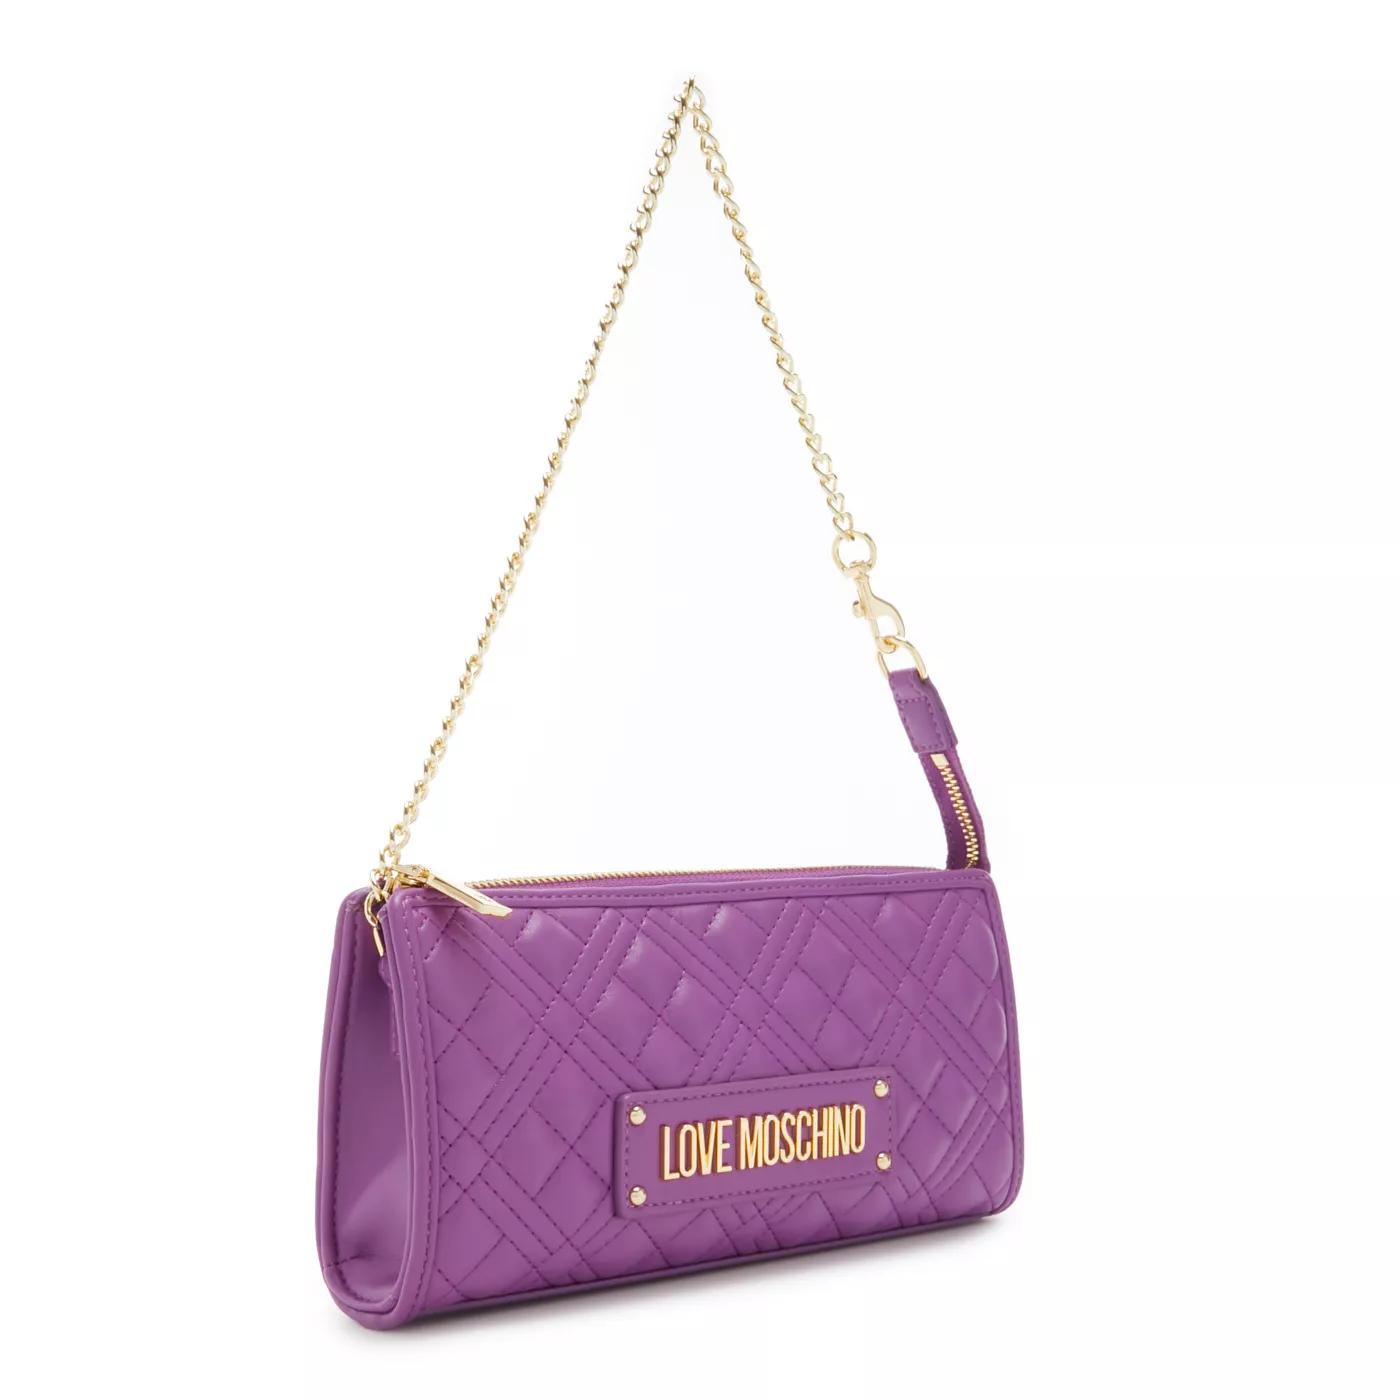 Love Moschino Crossbody Bags - Love Moschino Quilted Bag Lila Handtasche JC4011PP - Gr. unisize - in Violett - für Damen von Love Moschino